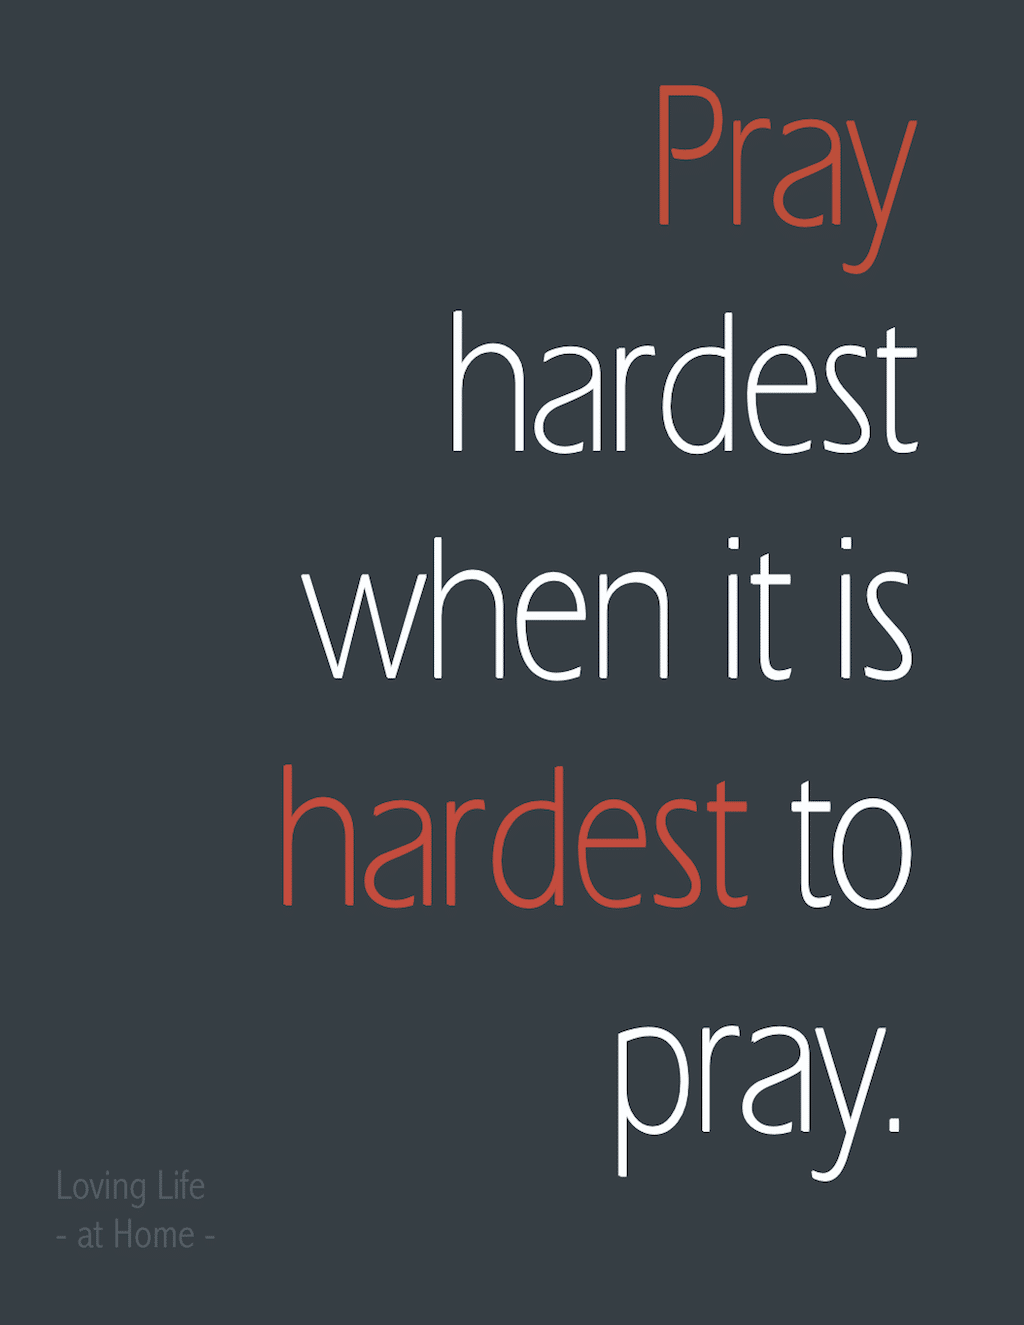 Pray hardest when it is hardest to pray.